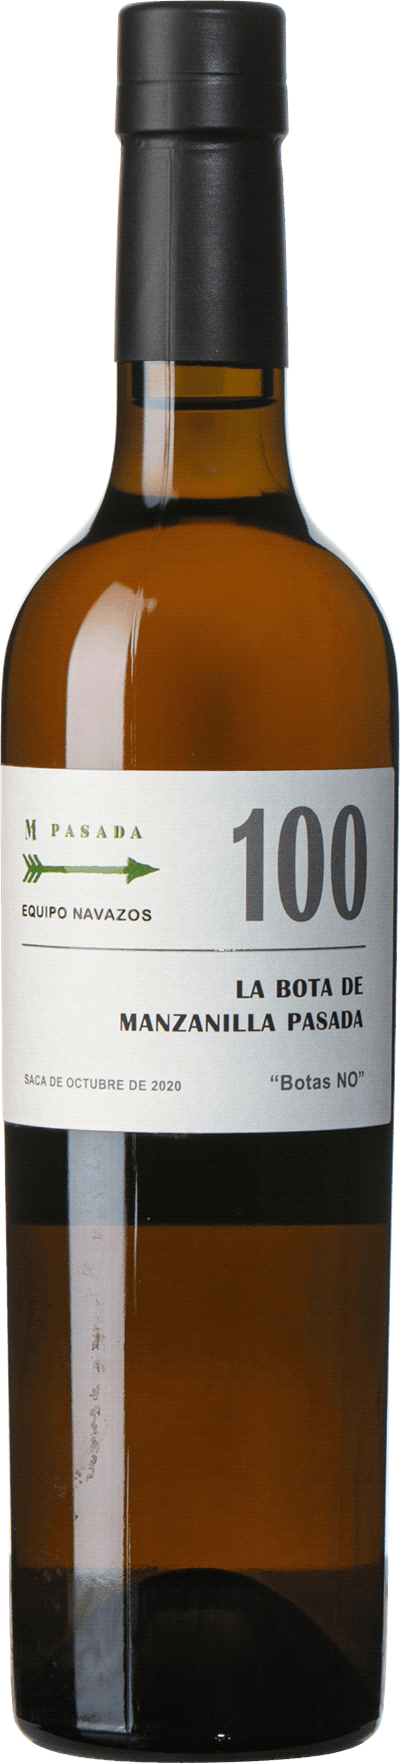 Manzanilla Pasada Bota 100